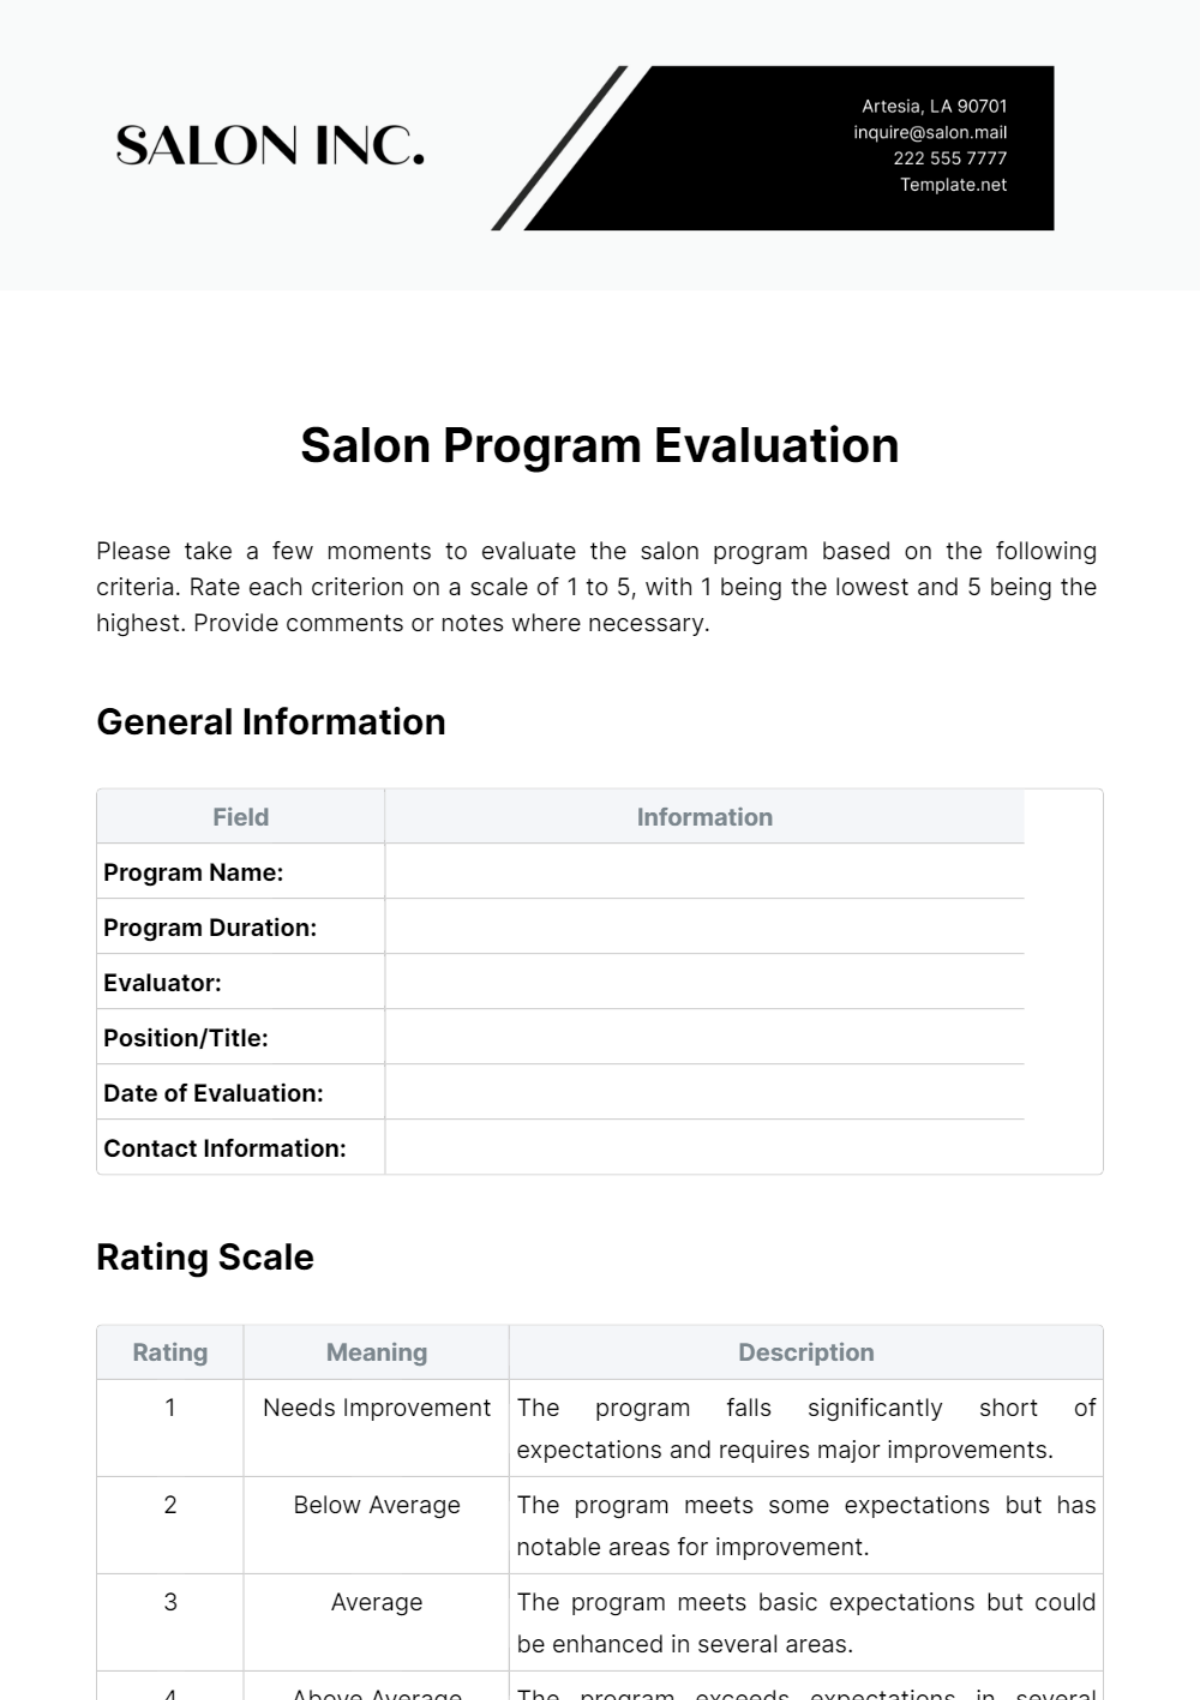 Salon Program Evaluation Template